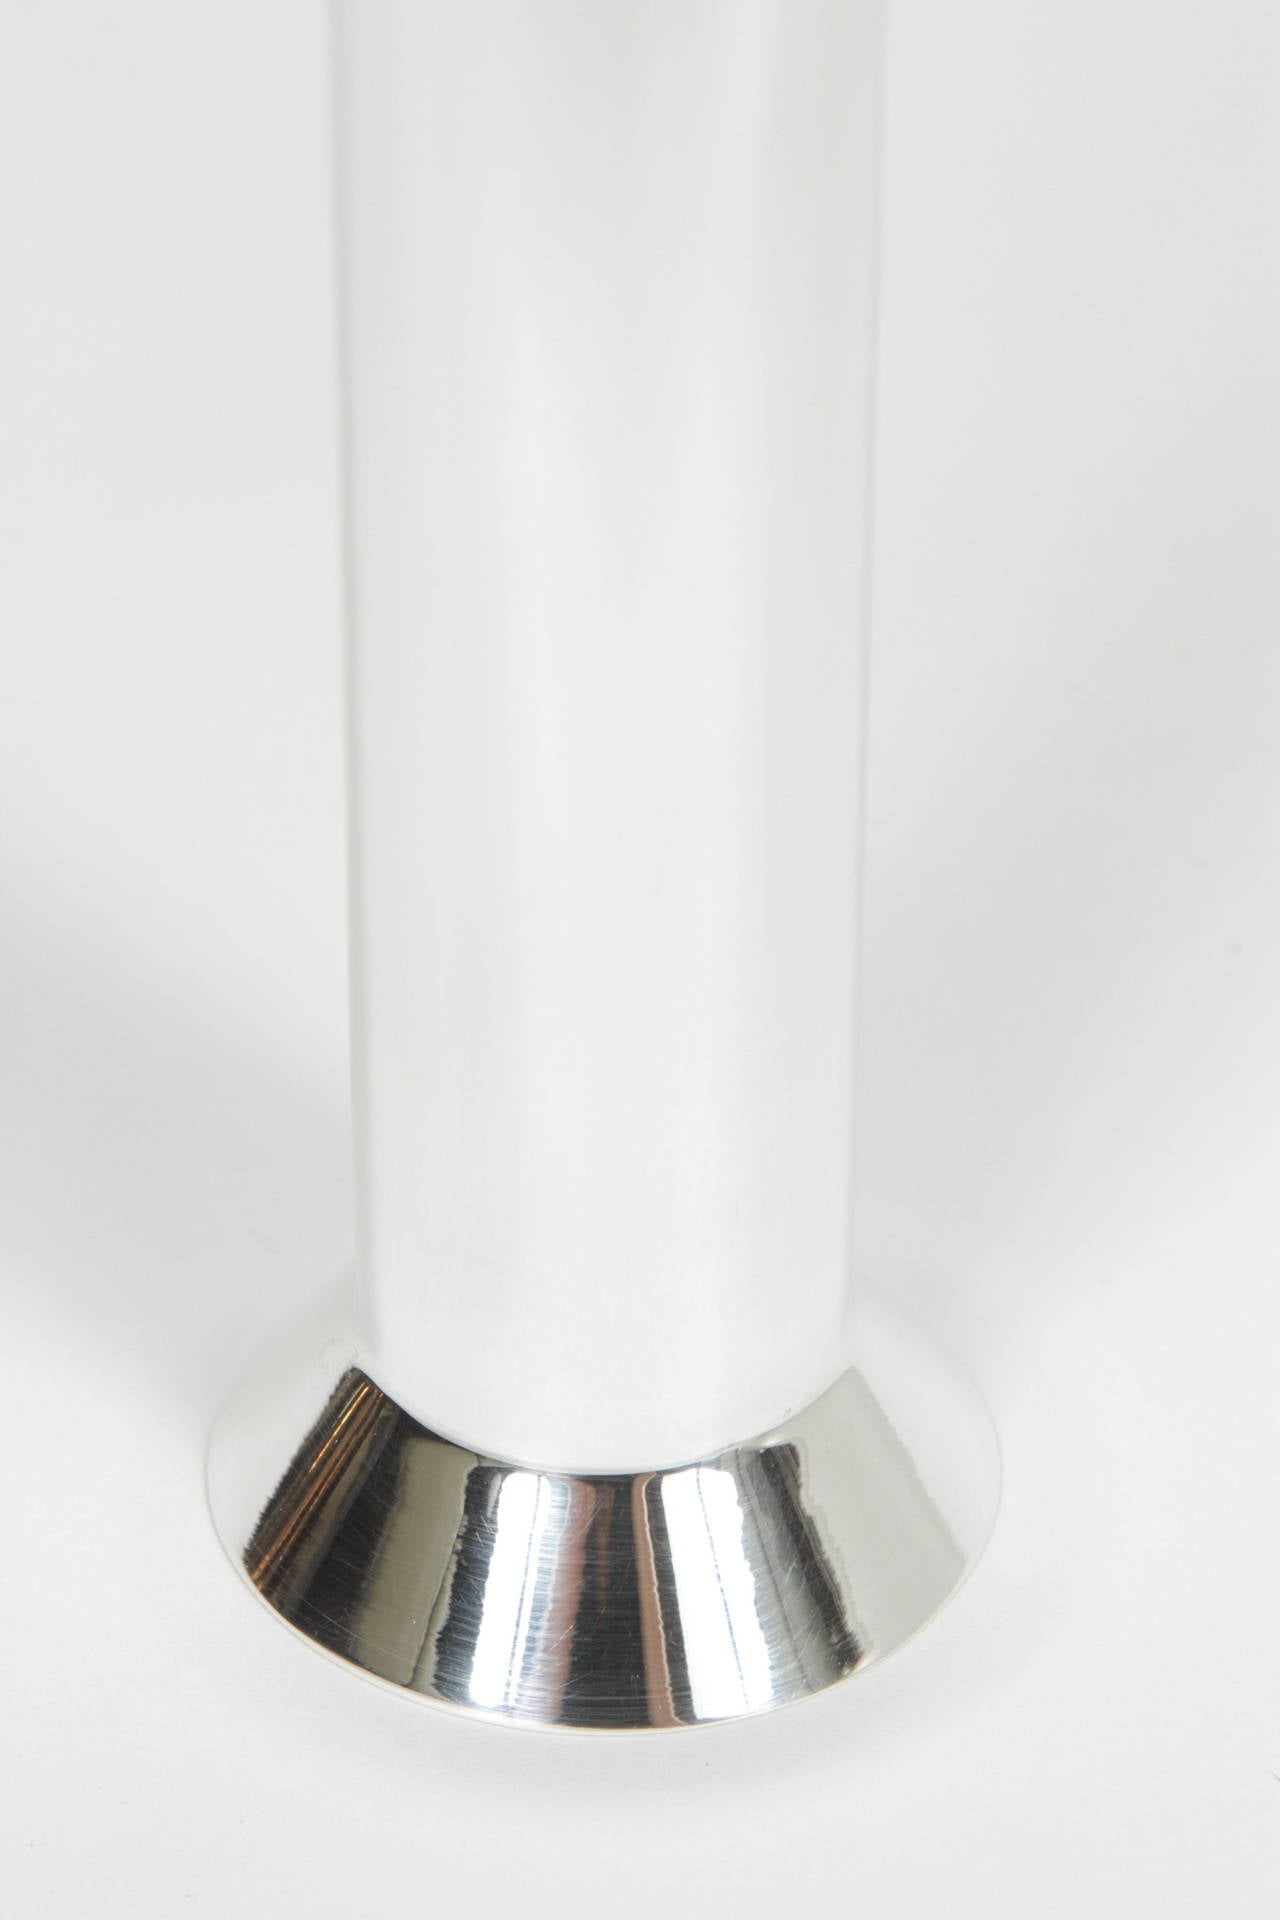 Polished Pair of Richard Meier for Swid Powell Vases